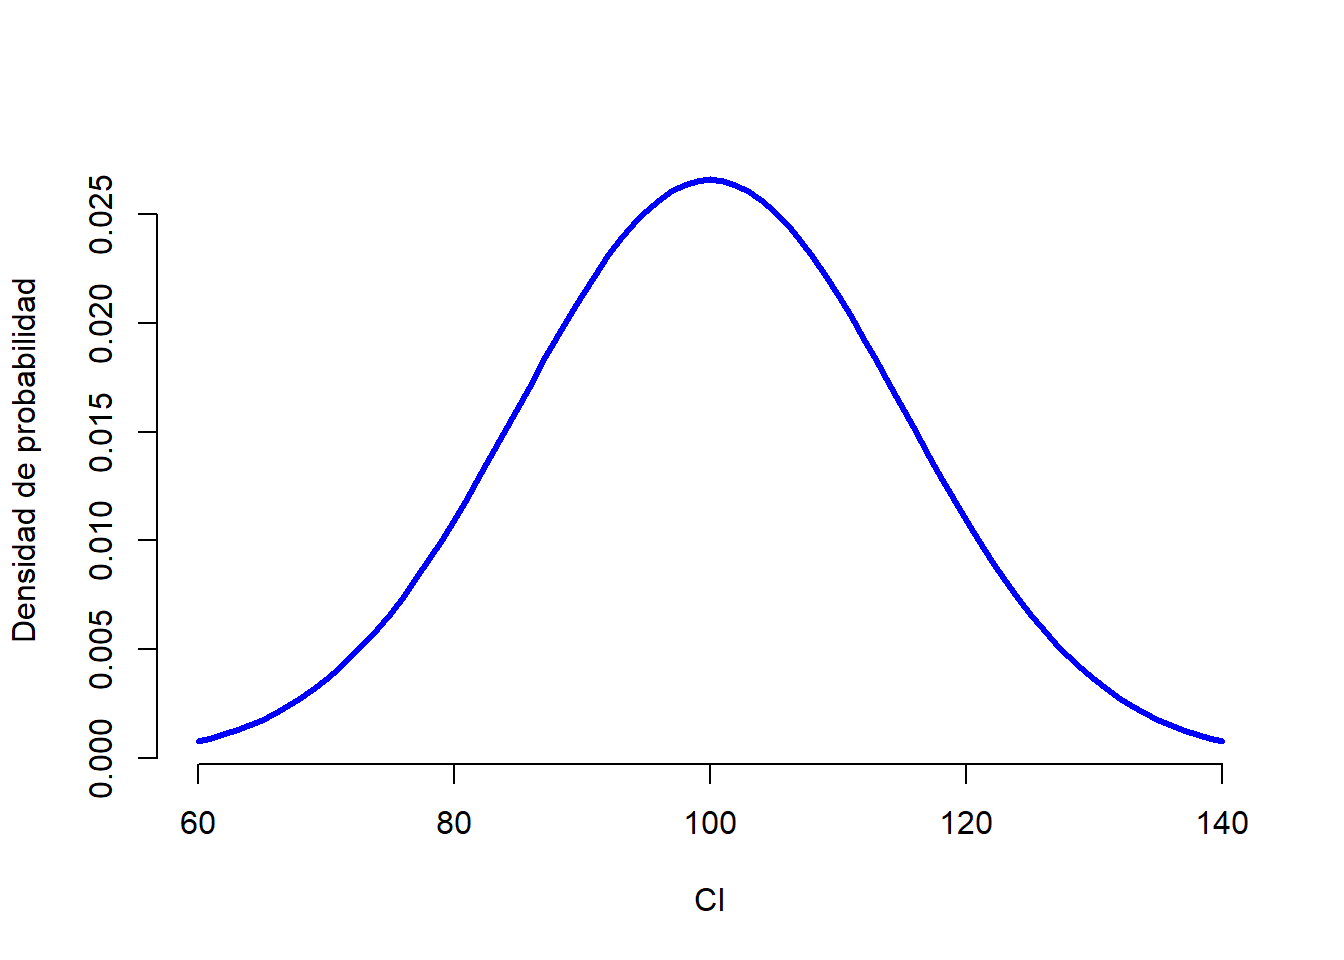 Distribución poblacional de los puntajes de CI.